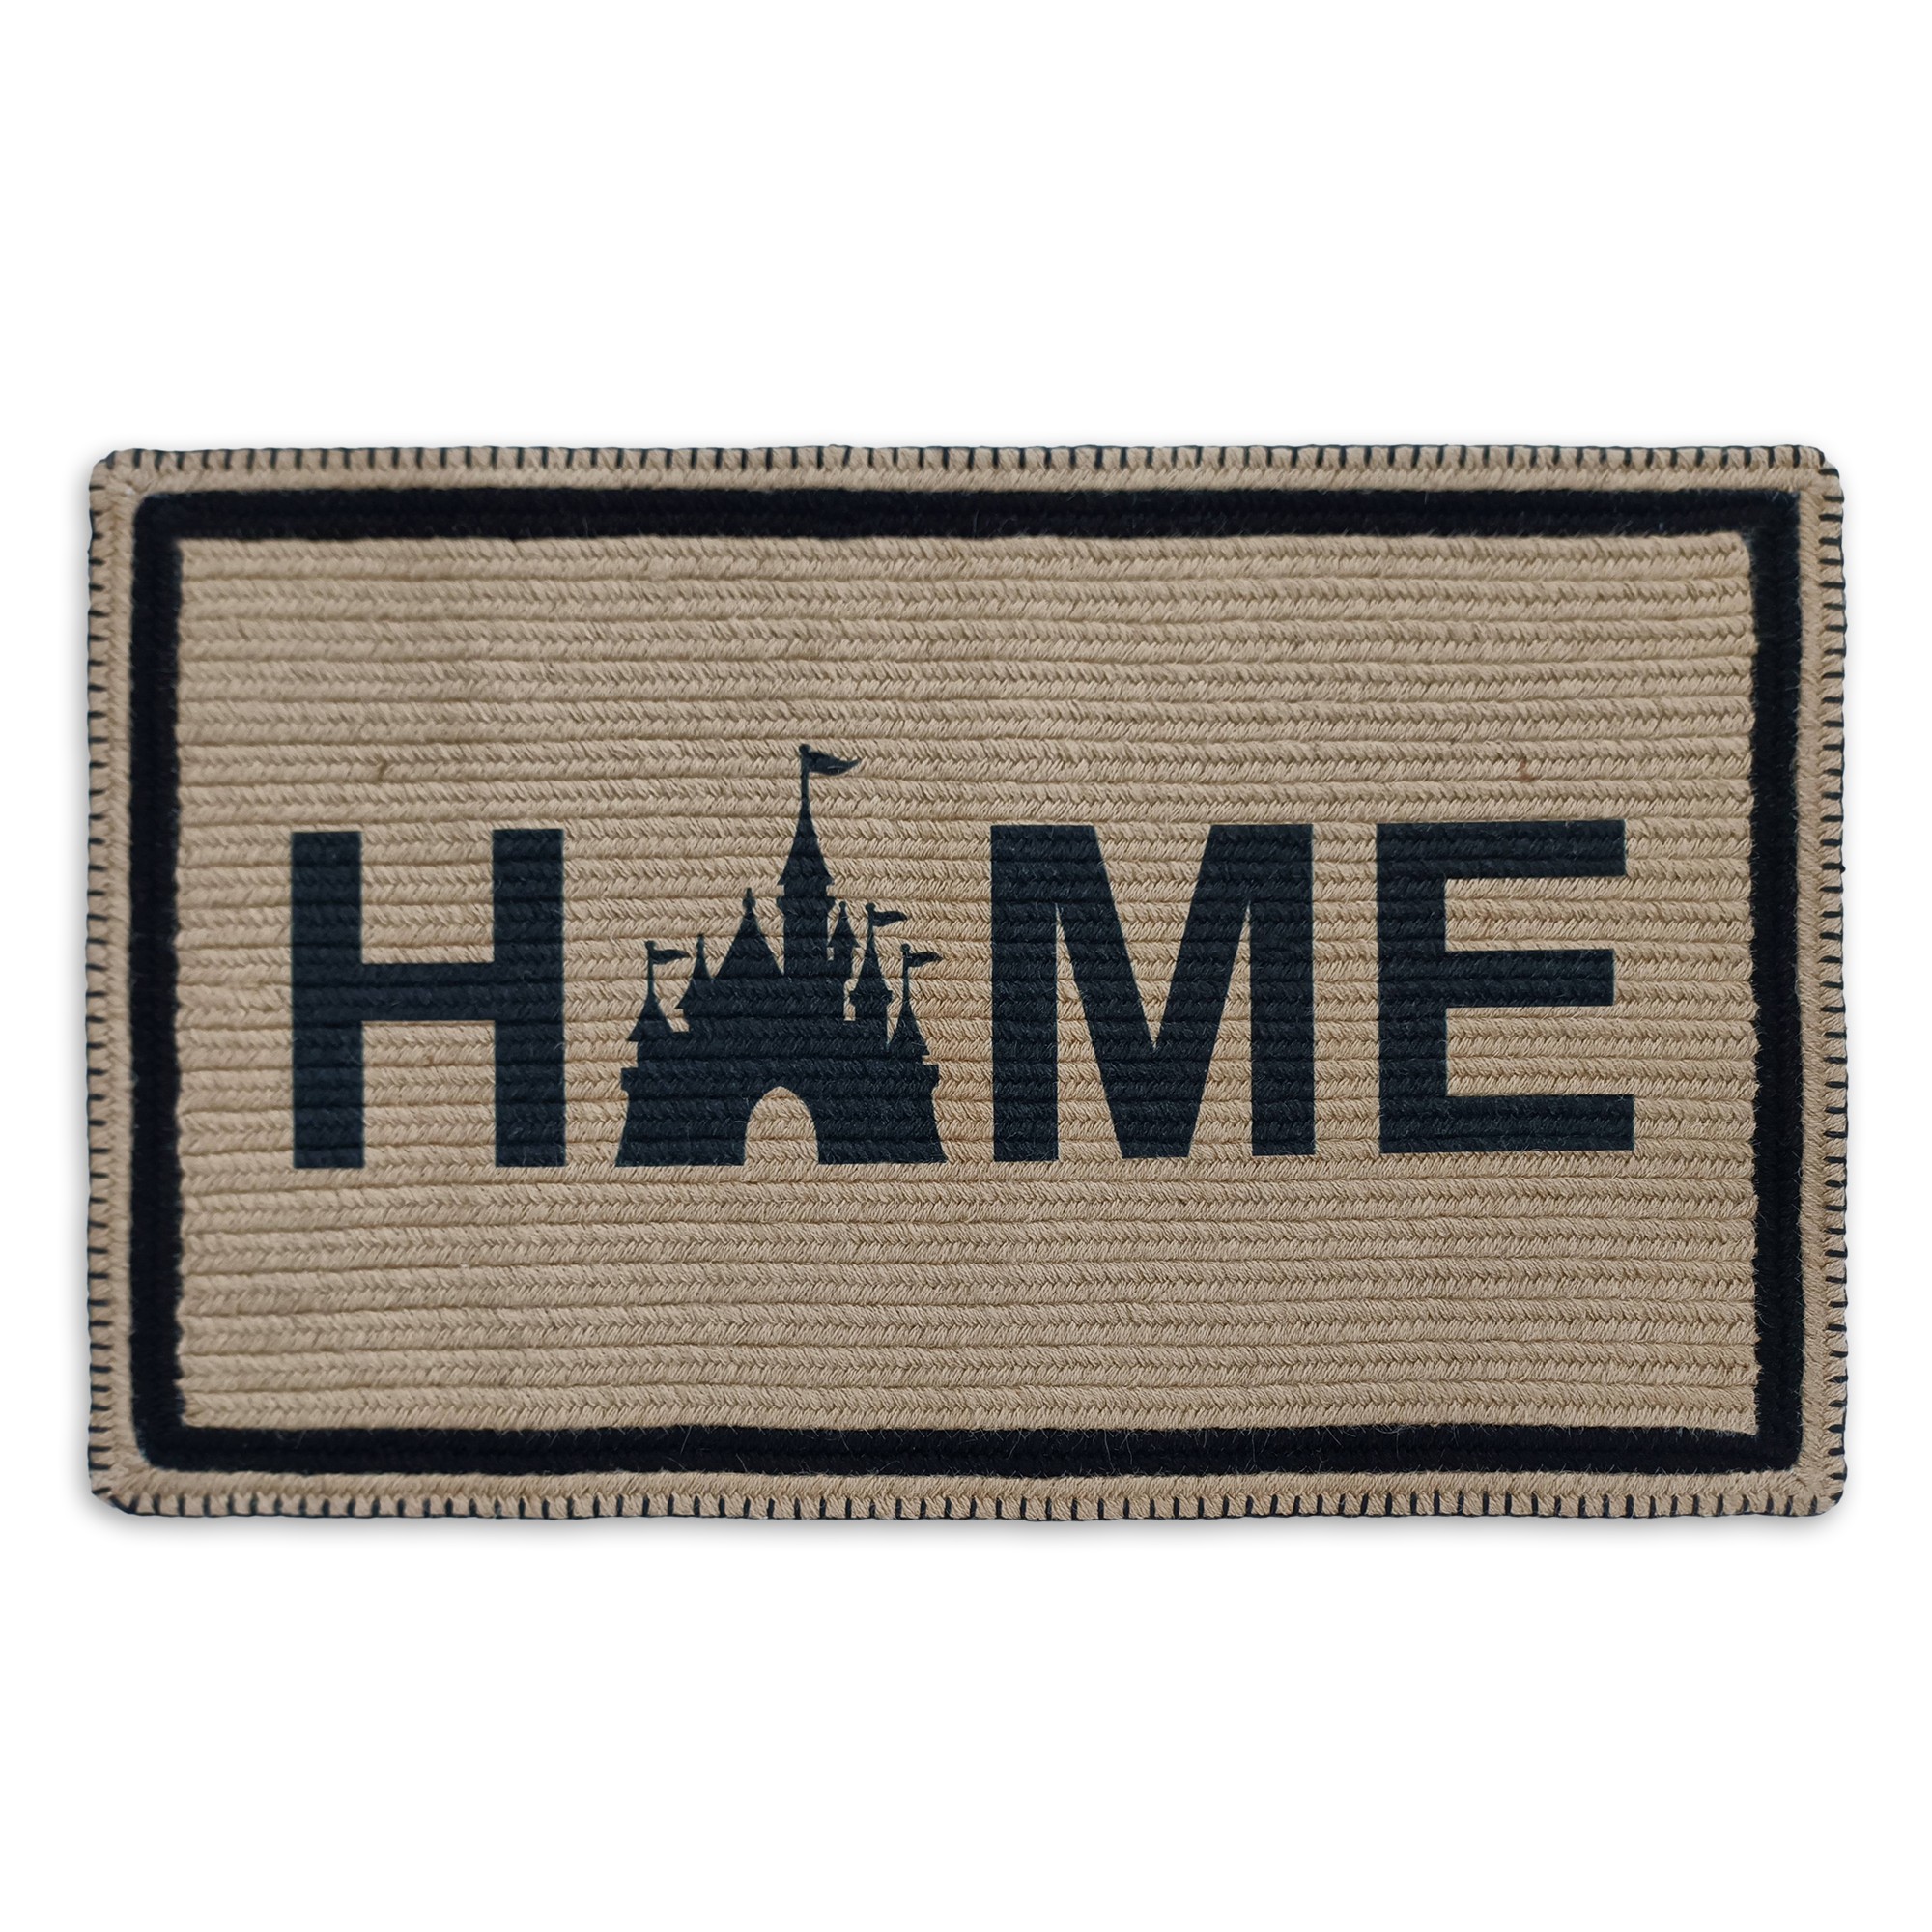 Fantasyland Castle Doormat – Disney Homestead Collection